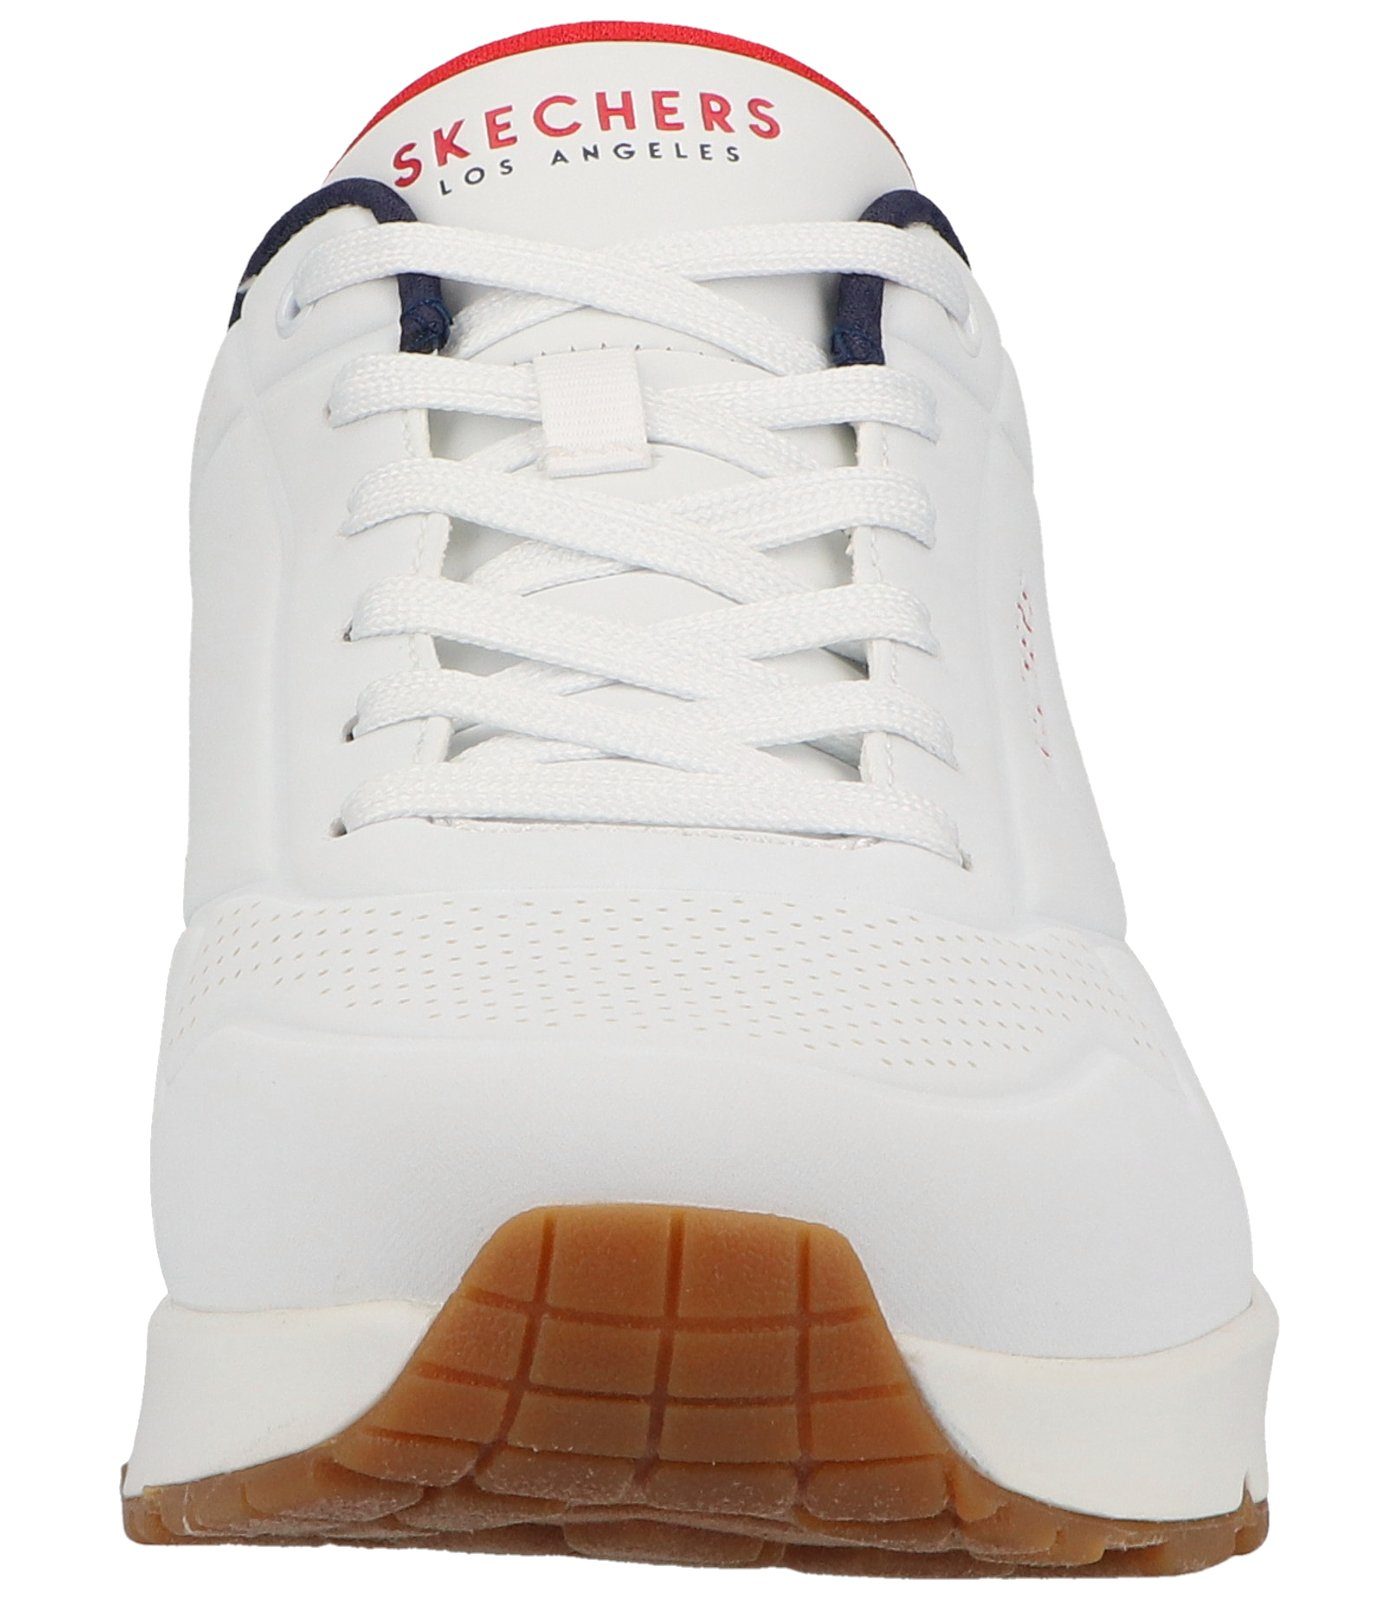 Sneaker Lederimitat Skechers Sneaker white/navy/red